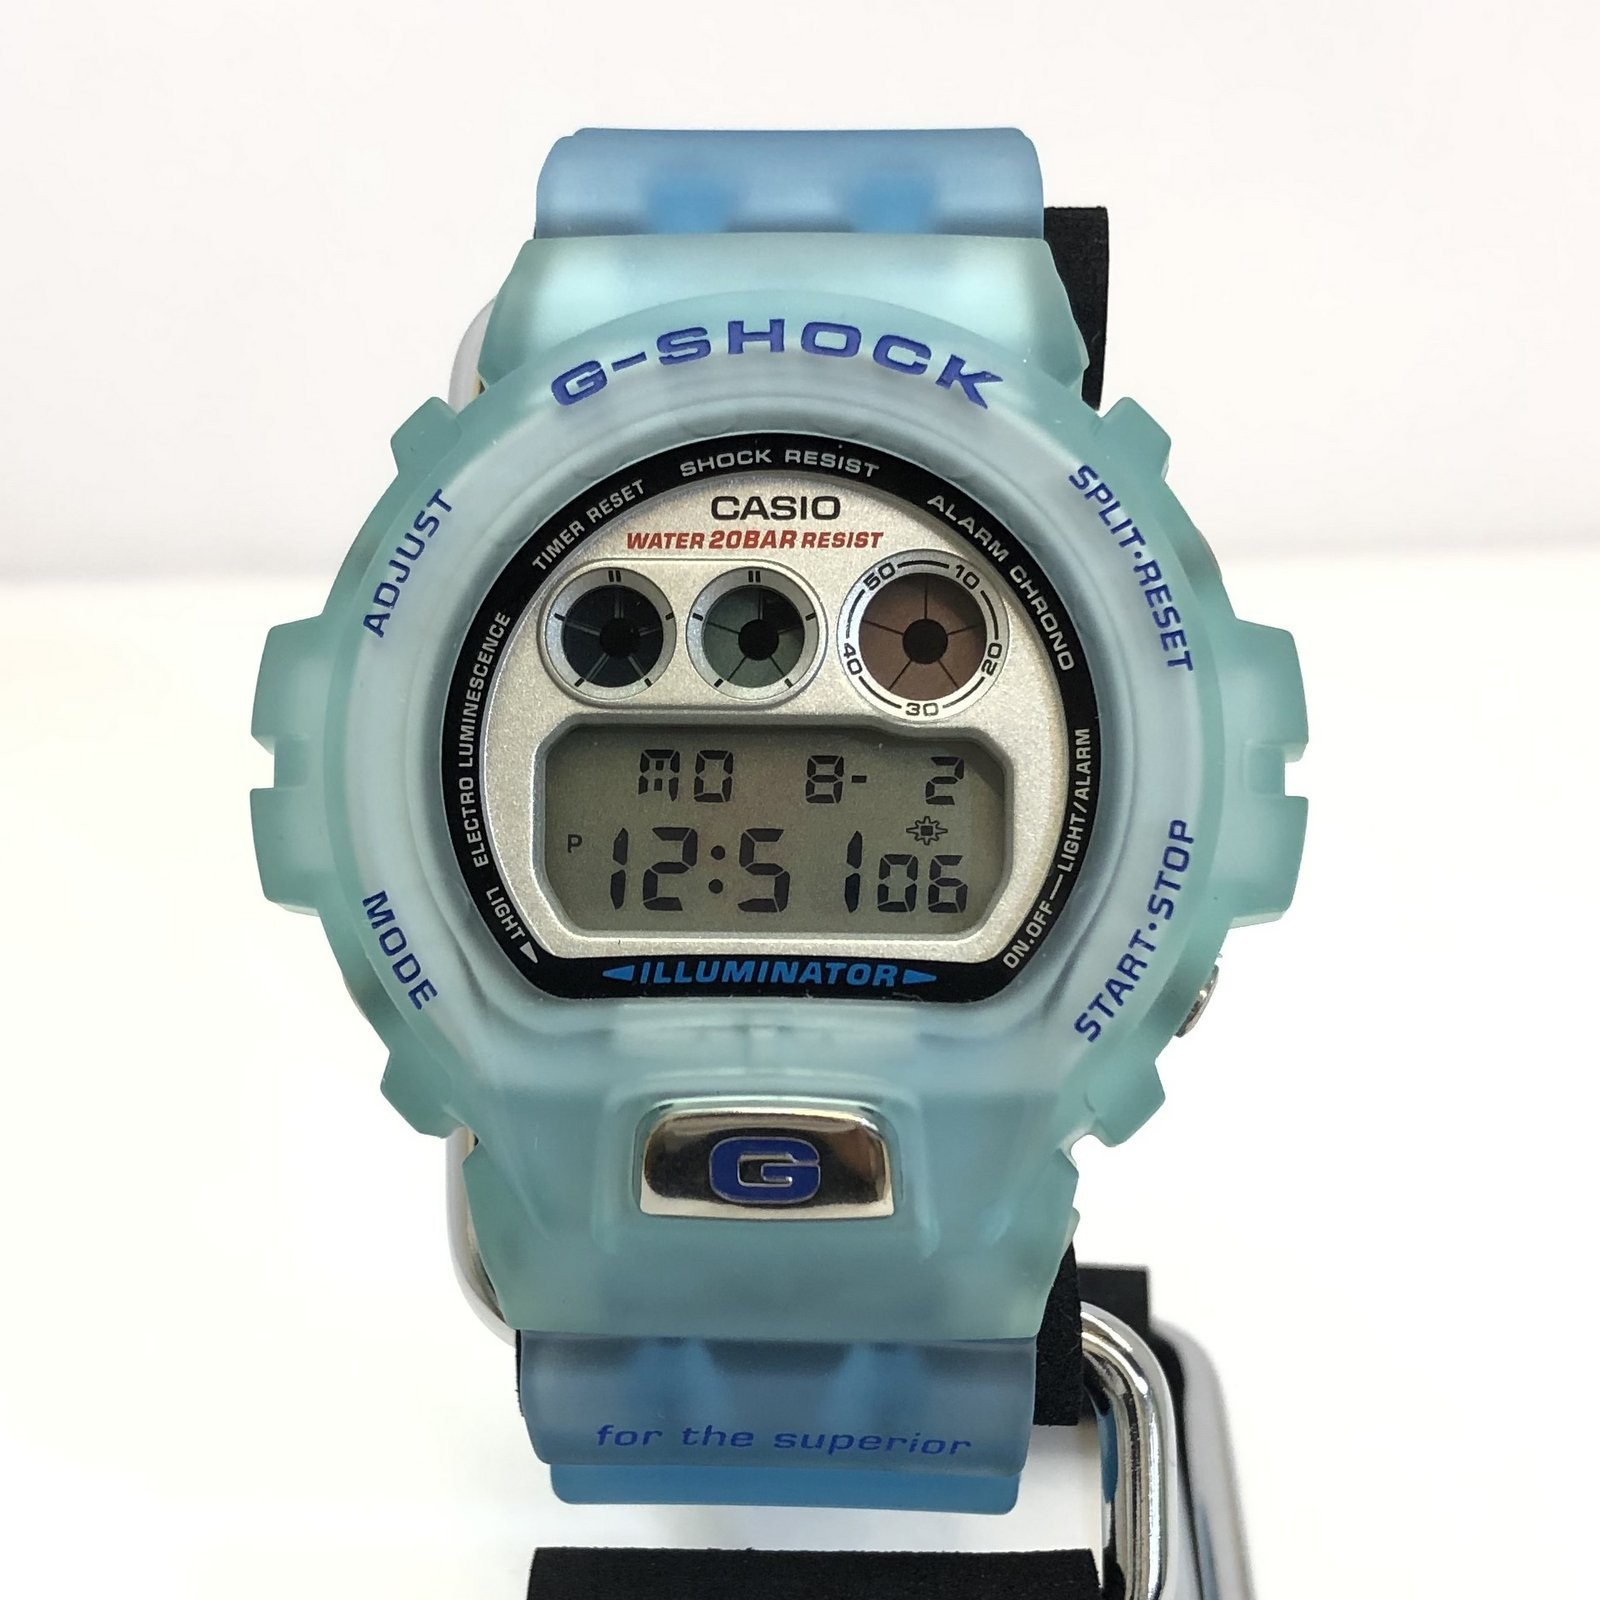 G-SHOCK G-SHOCK CASIO Casio watch DW-6900WF-2T 1998 